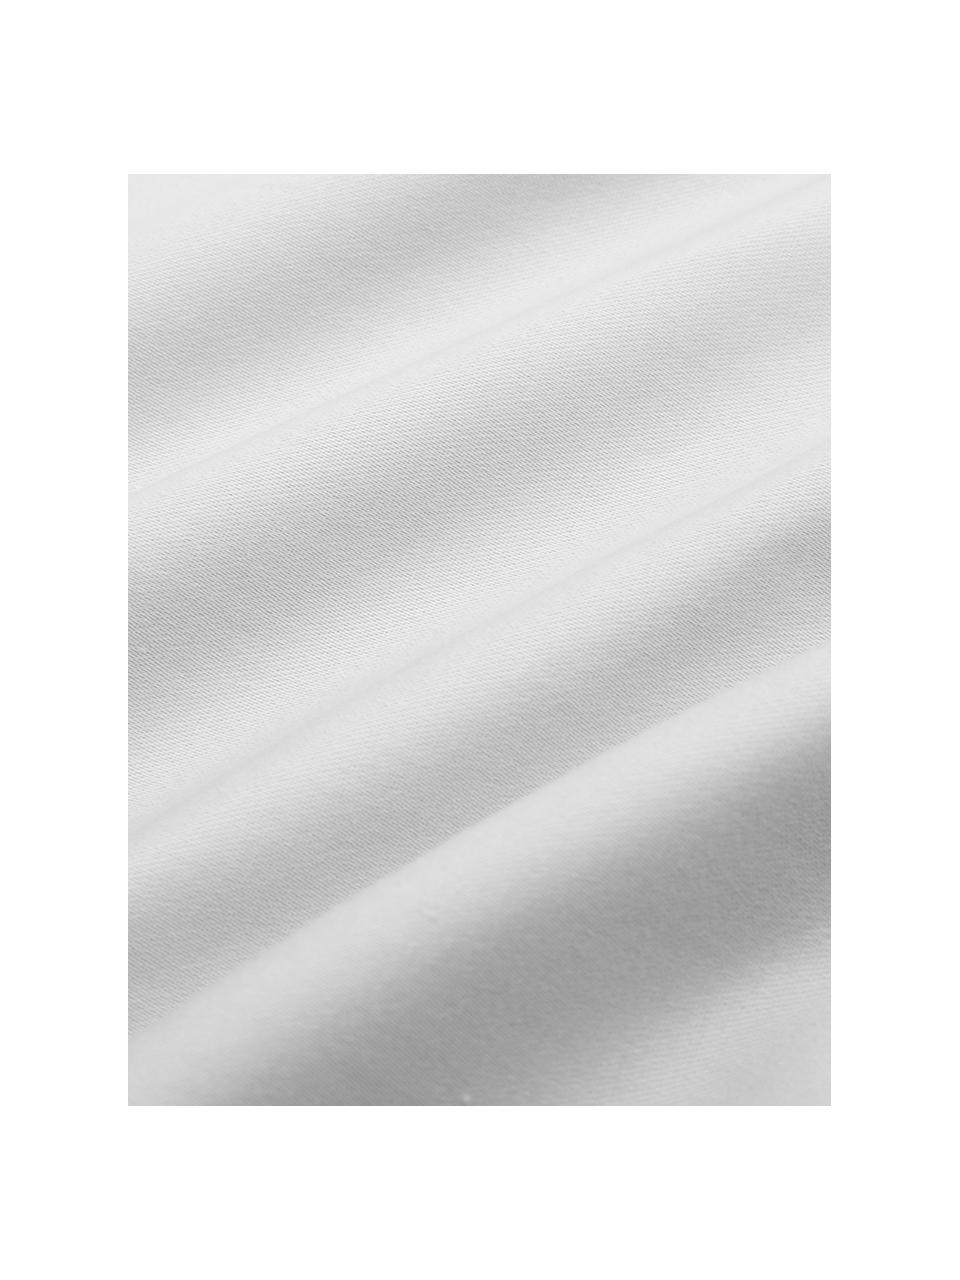 Baumwollsatin-Bettdeckenbezug Premium in Hellgrau mit Stehsaum, Webart: Satin, leicht glänzend Fa, Hellgrau, B 160 x L 210 cm